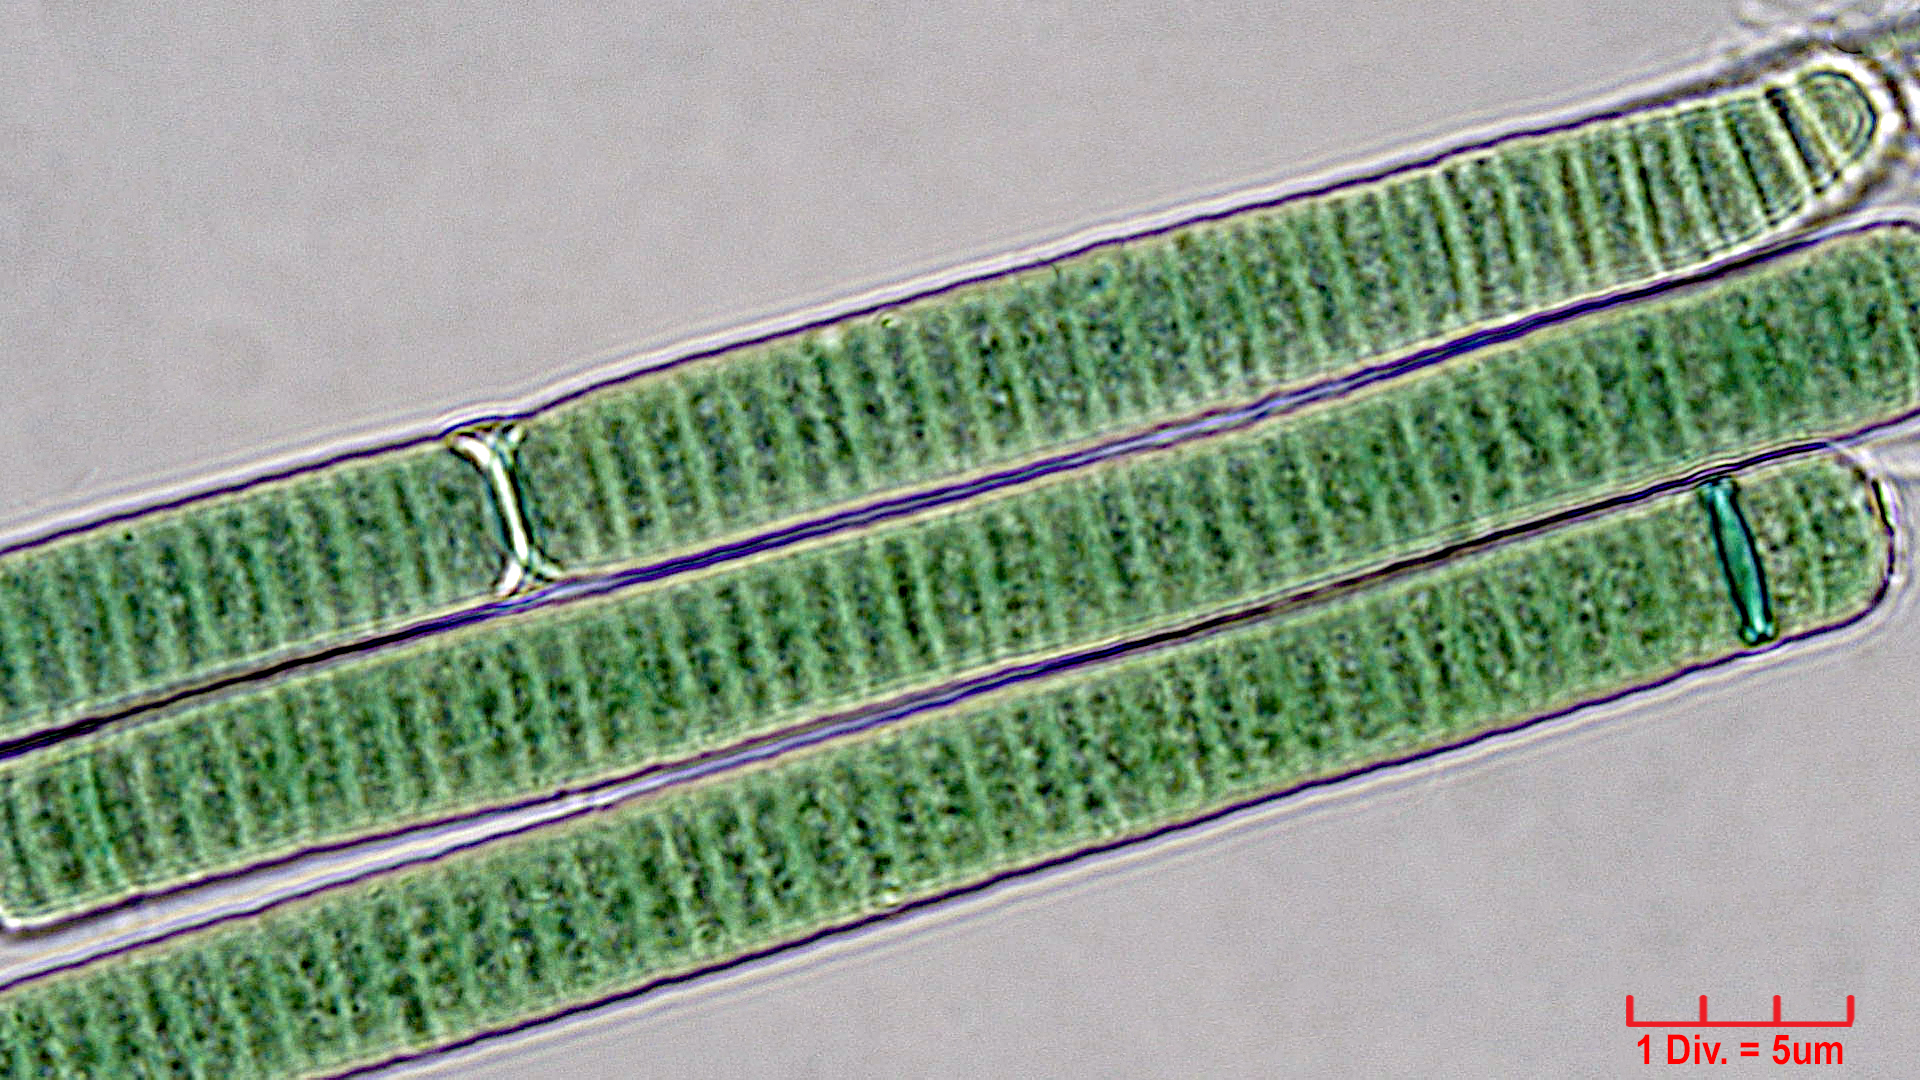 Cyanobacteria/Oscillatoriales/Oscillatoriaceae/Oscillatoria/curviceps/oscillatoria-curviceps-181.jpg